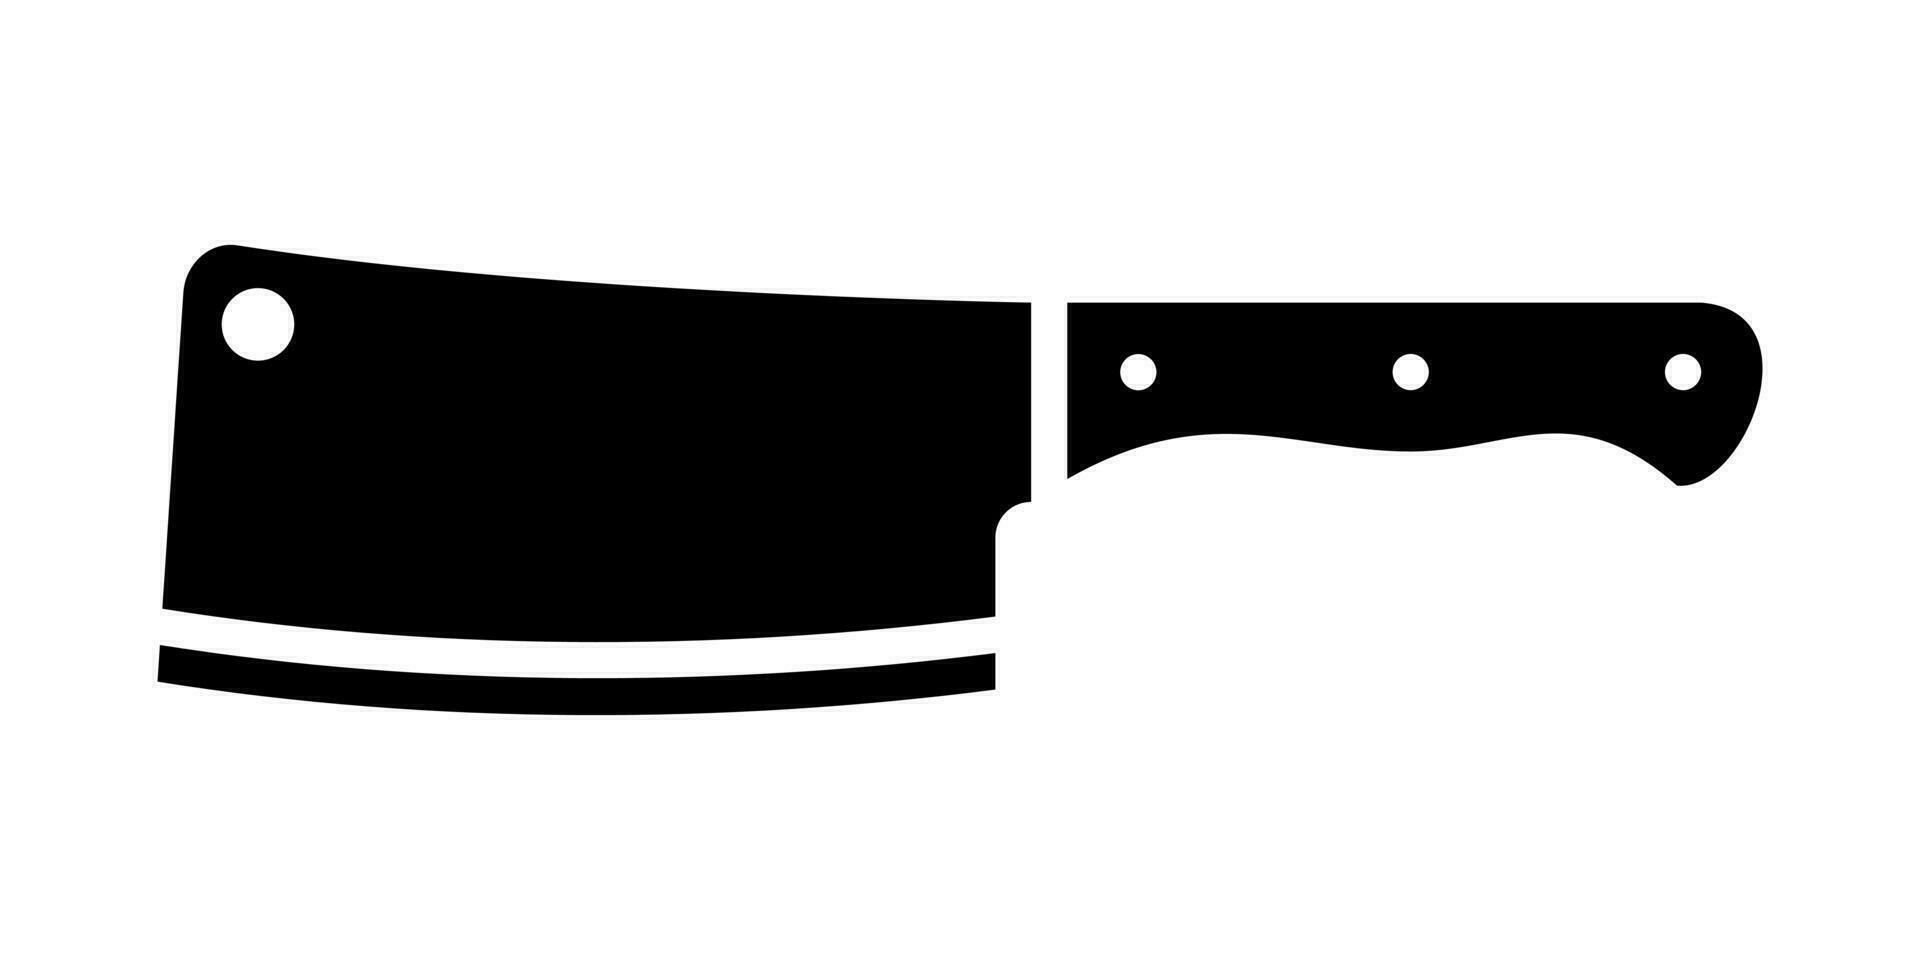 macellai accetta coltello. acciaio cucina attrezzo con largo lama per chopping e macellazione carne e vettore pollame